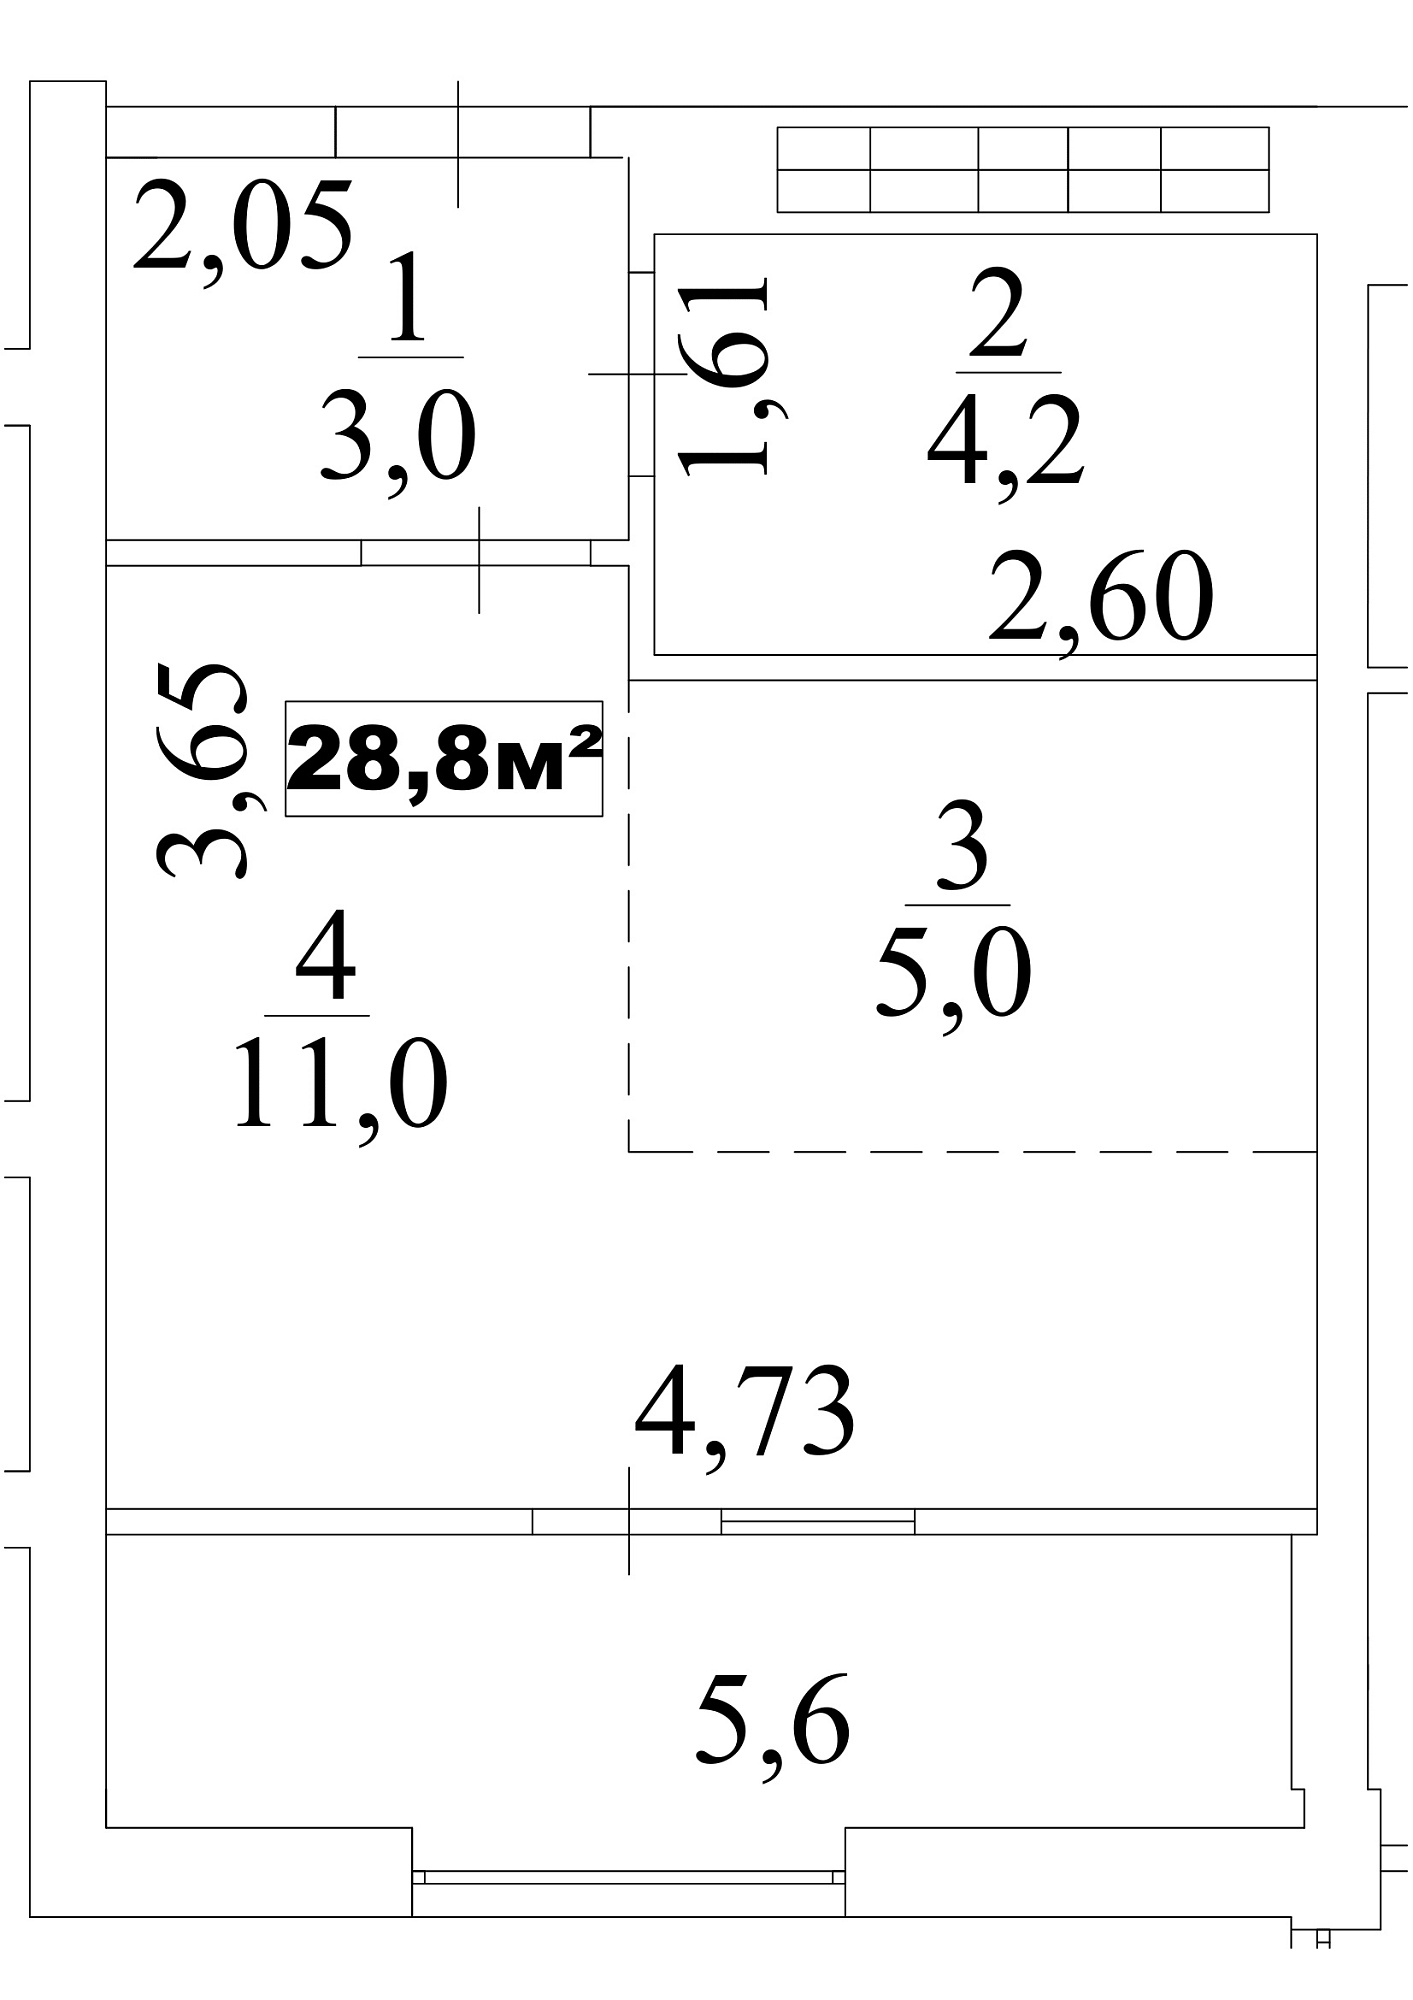 Планування Smart-квартира площею 28.8м2, AB-10-10/00090.